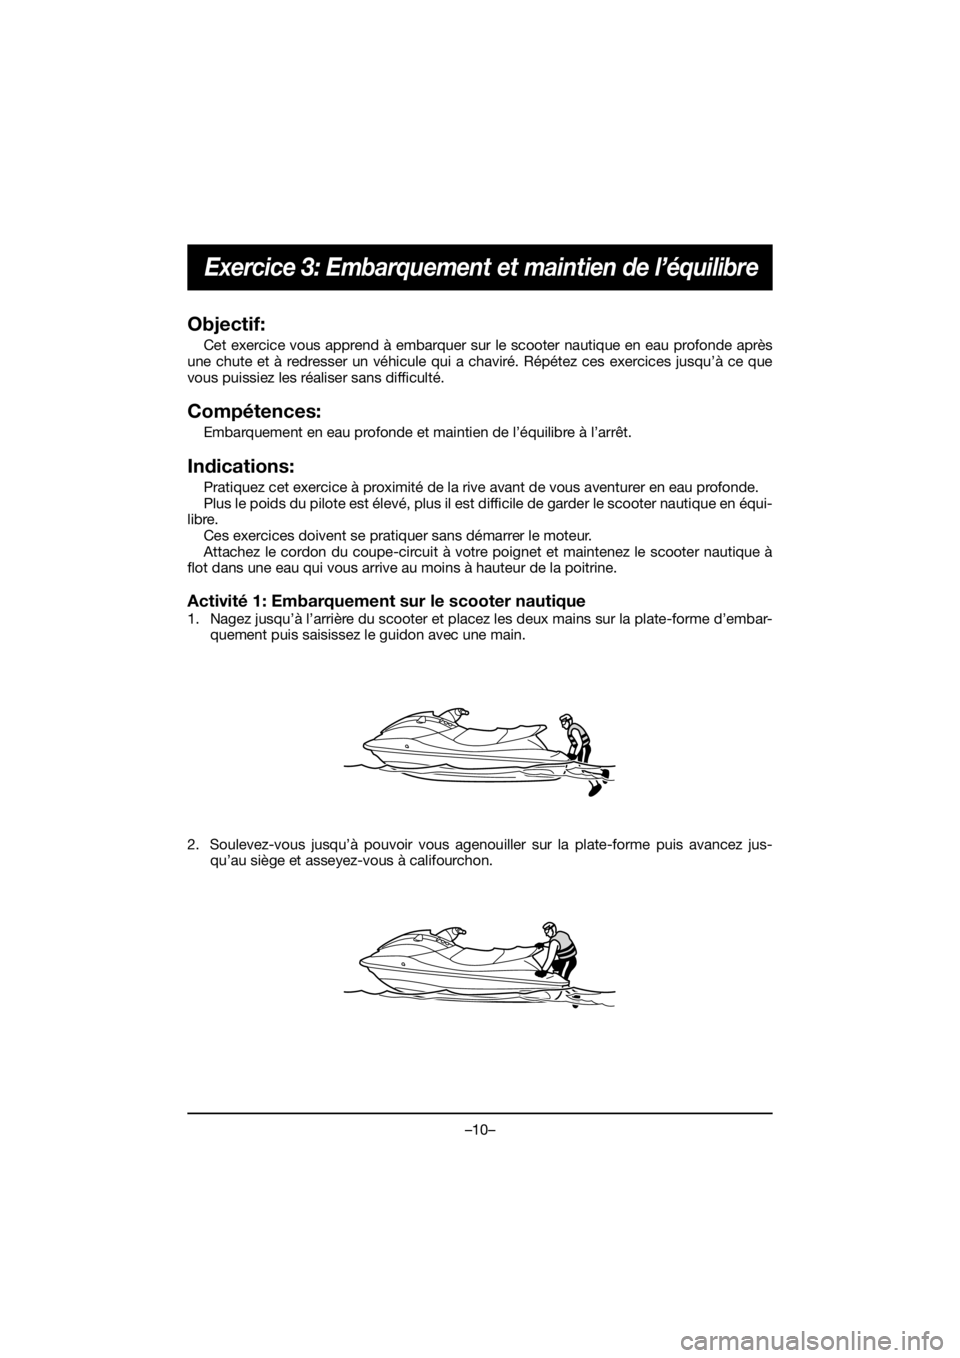 YAMAHA EX DELUXE 2019 Owners Guide –10–
Exercice 3: Embarquement et maintien de l’équilibre
Objectif:
Cet exercice vous apprend à embarquer sur le scooter nautique en eau profonde après
une chute et à redresser un véhicule q